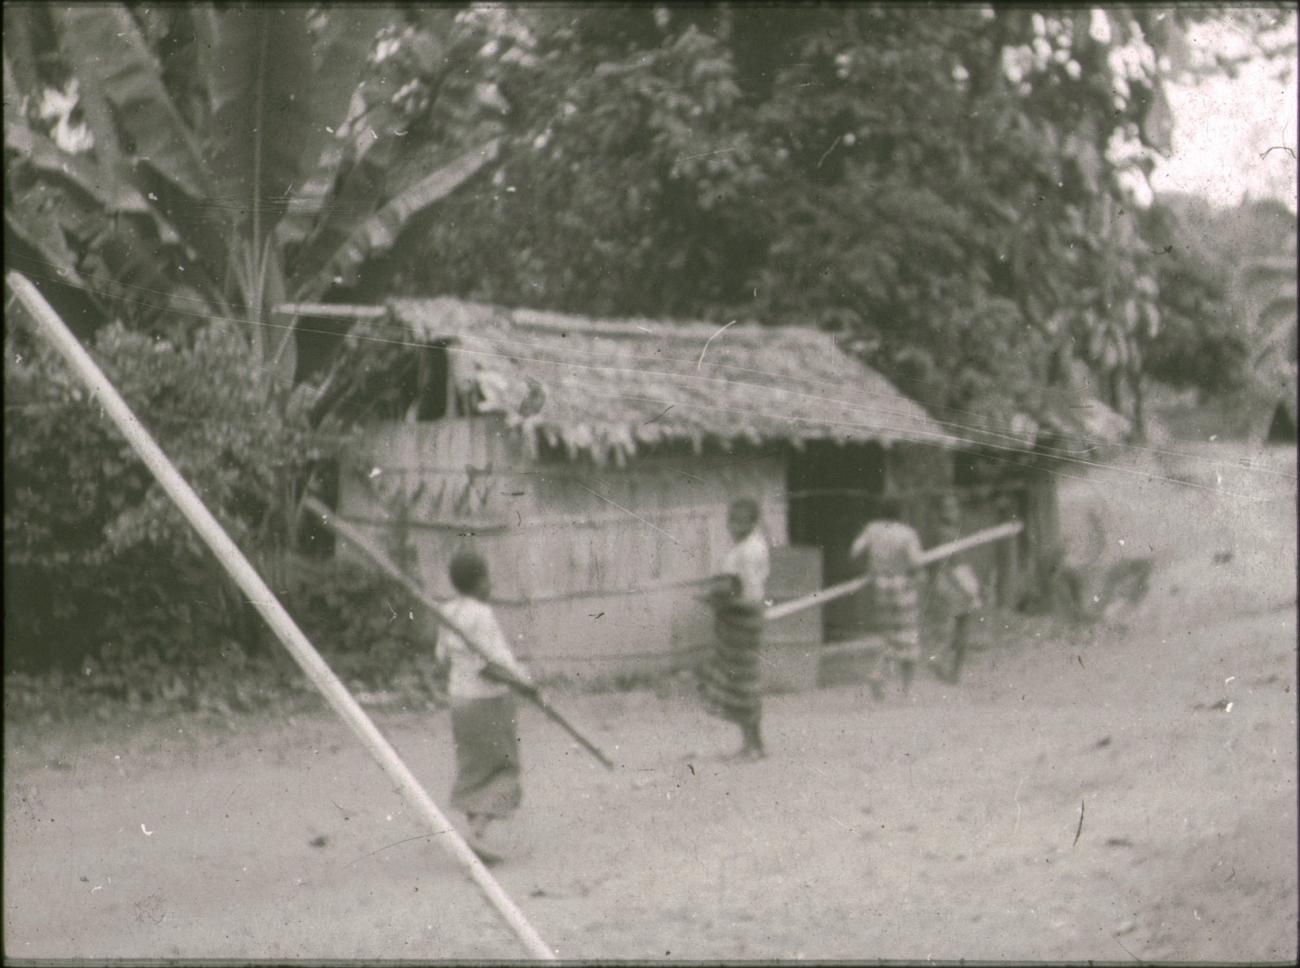 BD/309/369 - 
Drie vrouwen voor een traditionele woning in het dorp Wersar
